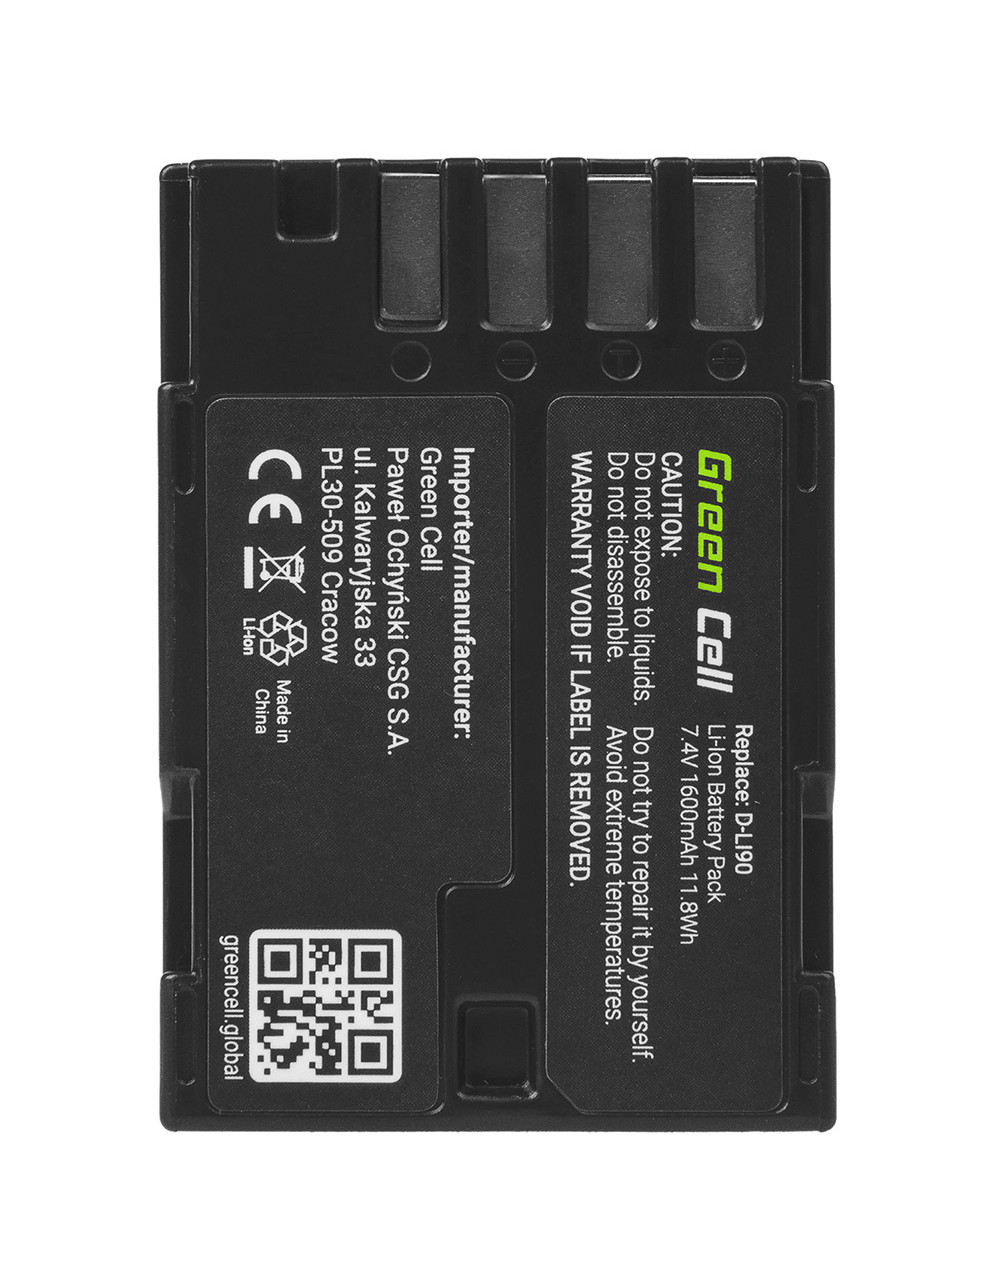 EOL-Green Cell Camera Battery D-LI90 for Pentax K-01 K-3 K-3 II K-3 III K-5 K-5 II K-7 645 645D 645Z, Full Decoded 7.4V 1600mAh